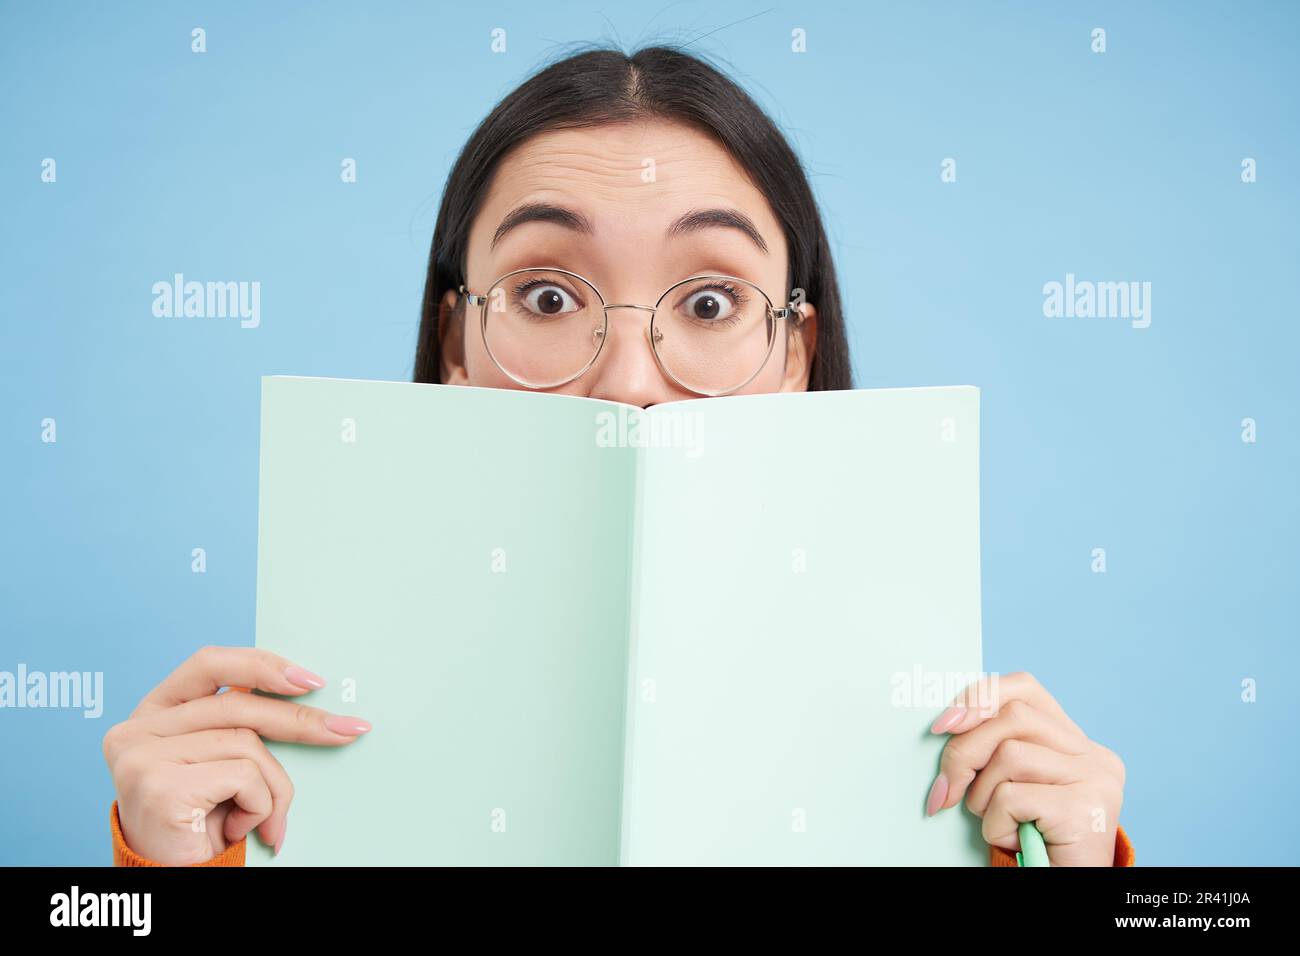 Süße asiatische Frau in Brille, versteckt ihr Gesicht hinter dem Notizbuch und lächelt mit Augen, neugieriger Blick, steht auf blauem Hintergrund. Stu Stockfoto